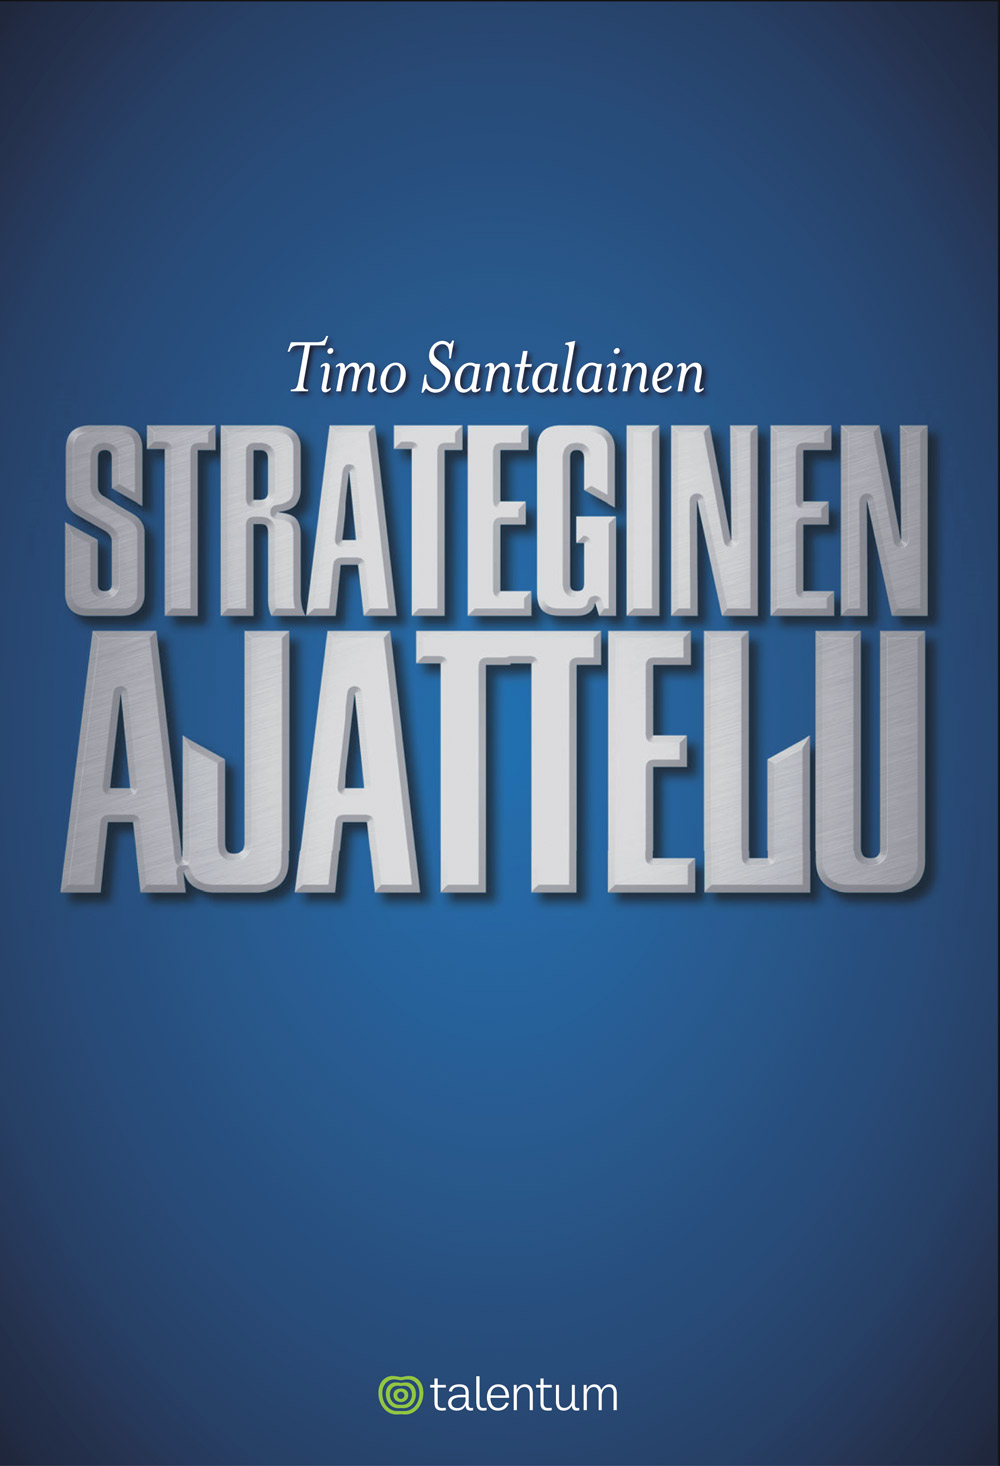 Santalainen, Timo - Strateginen ajattelu, ebook